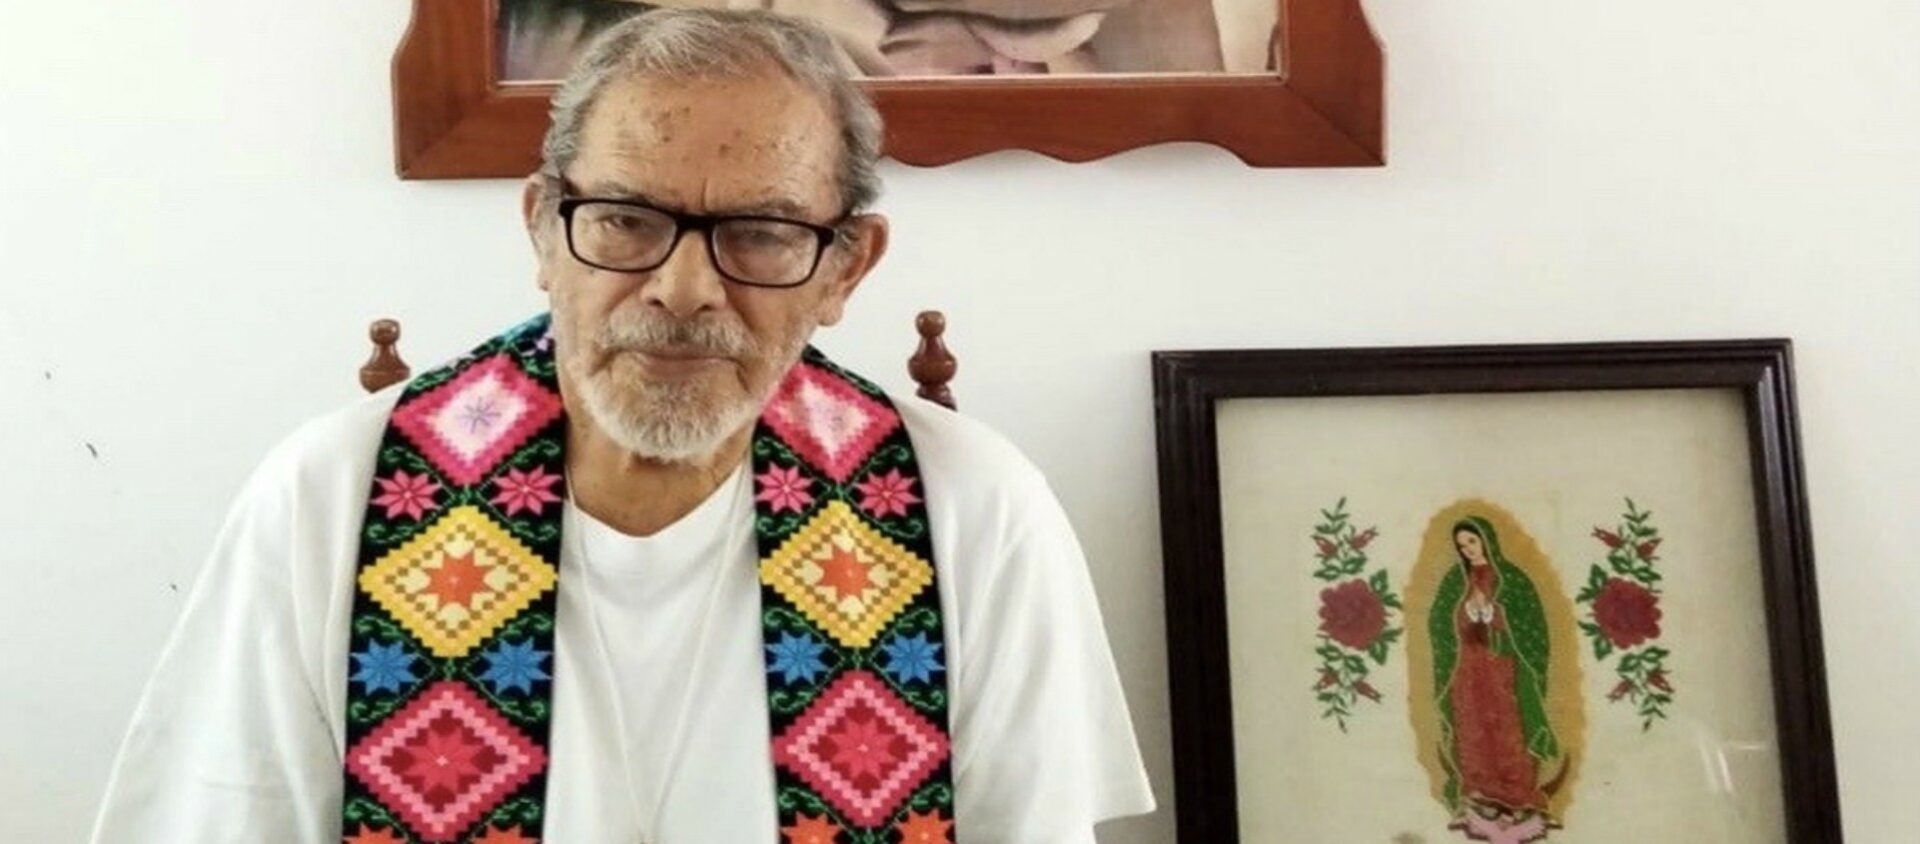 Mgr Arturo Lona Reyes, grande figure de l'Eglise engagée aux côtés des pauvres et des indigènes marginalisés au Mexique | DR